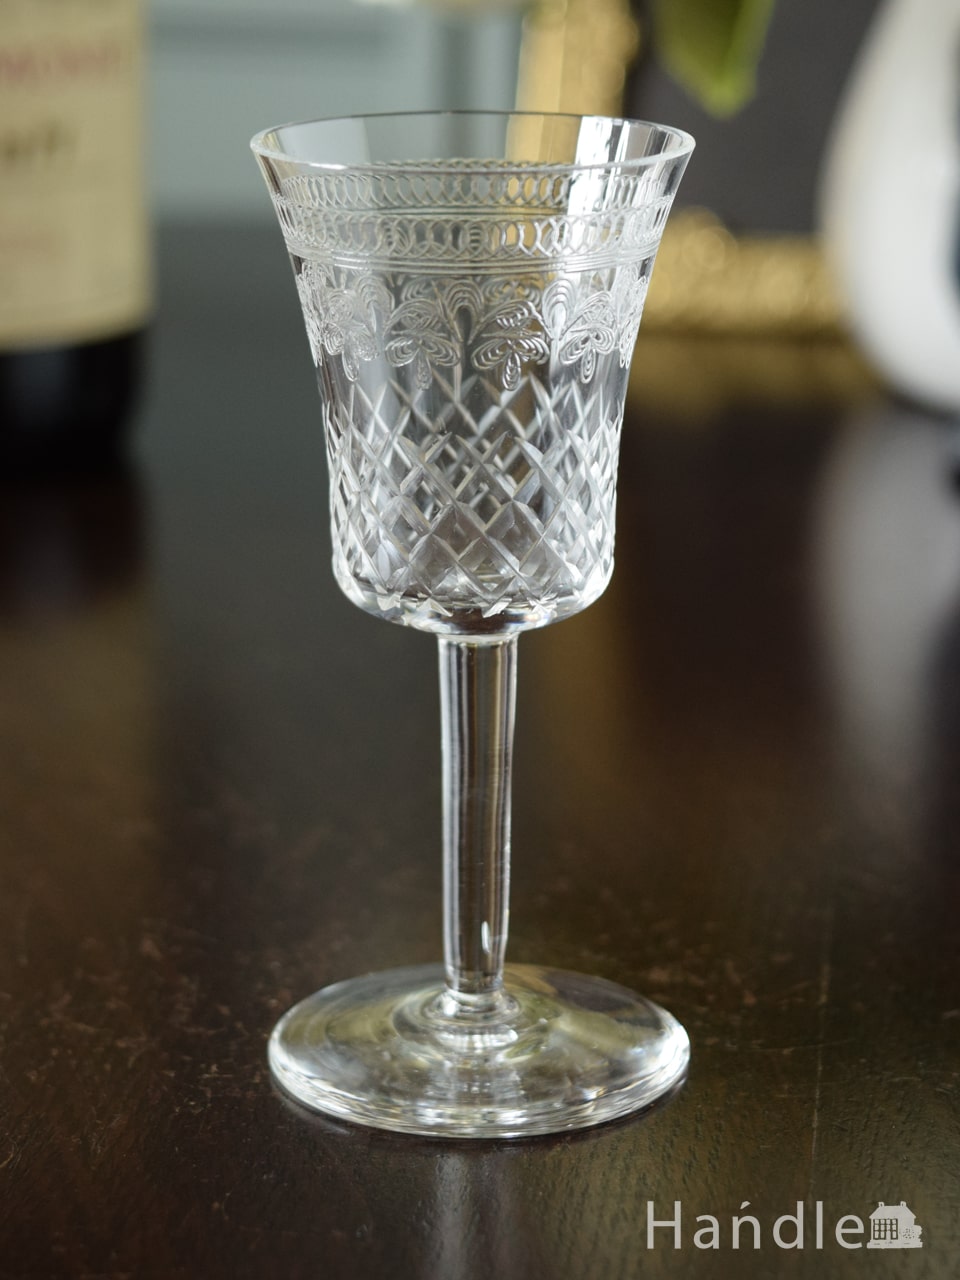 PALL MALL社レディ・ハミルトンシリーズのグラス、イギリスの